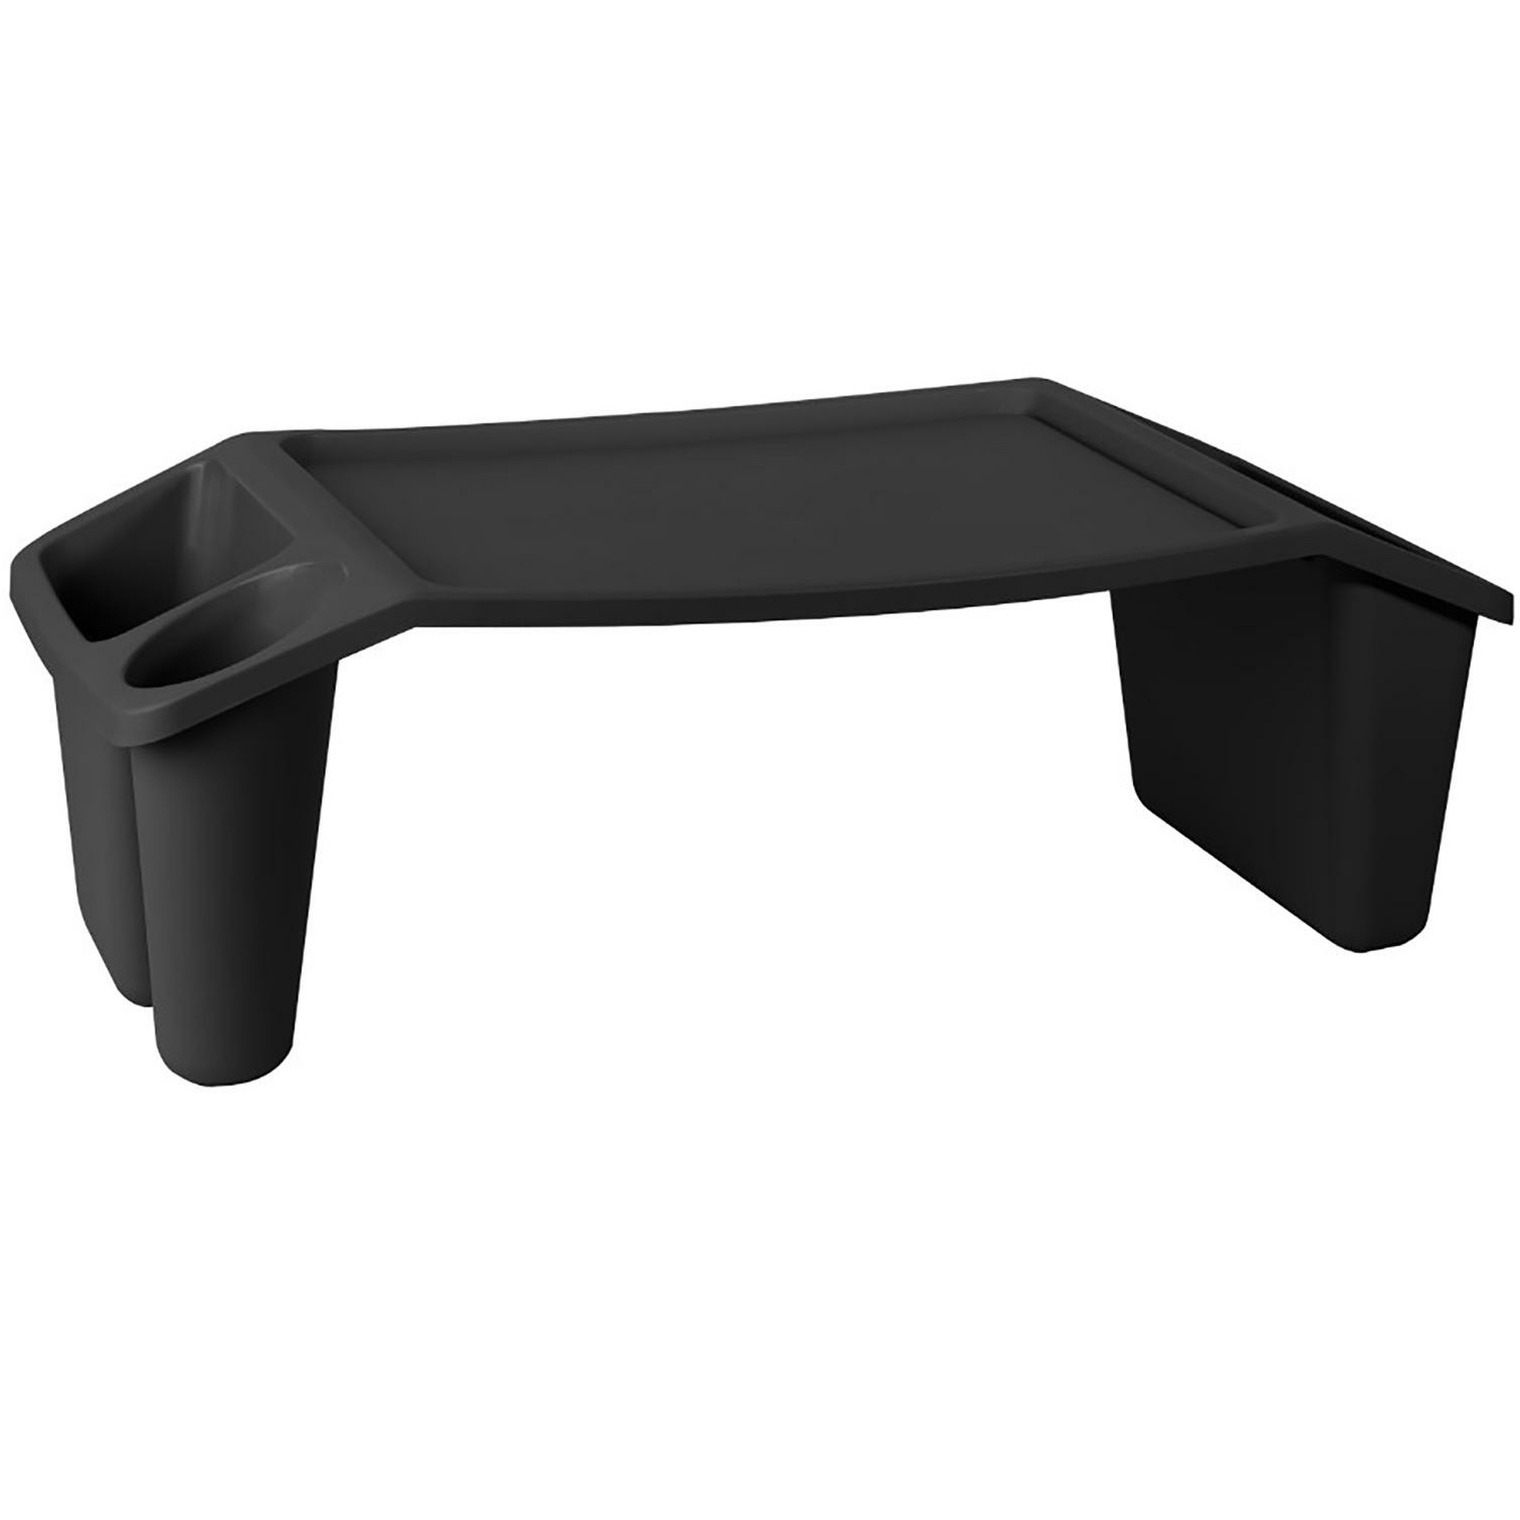 Bedtafel kunststof zwart L60 x B31 x H20 cm dienblad